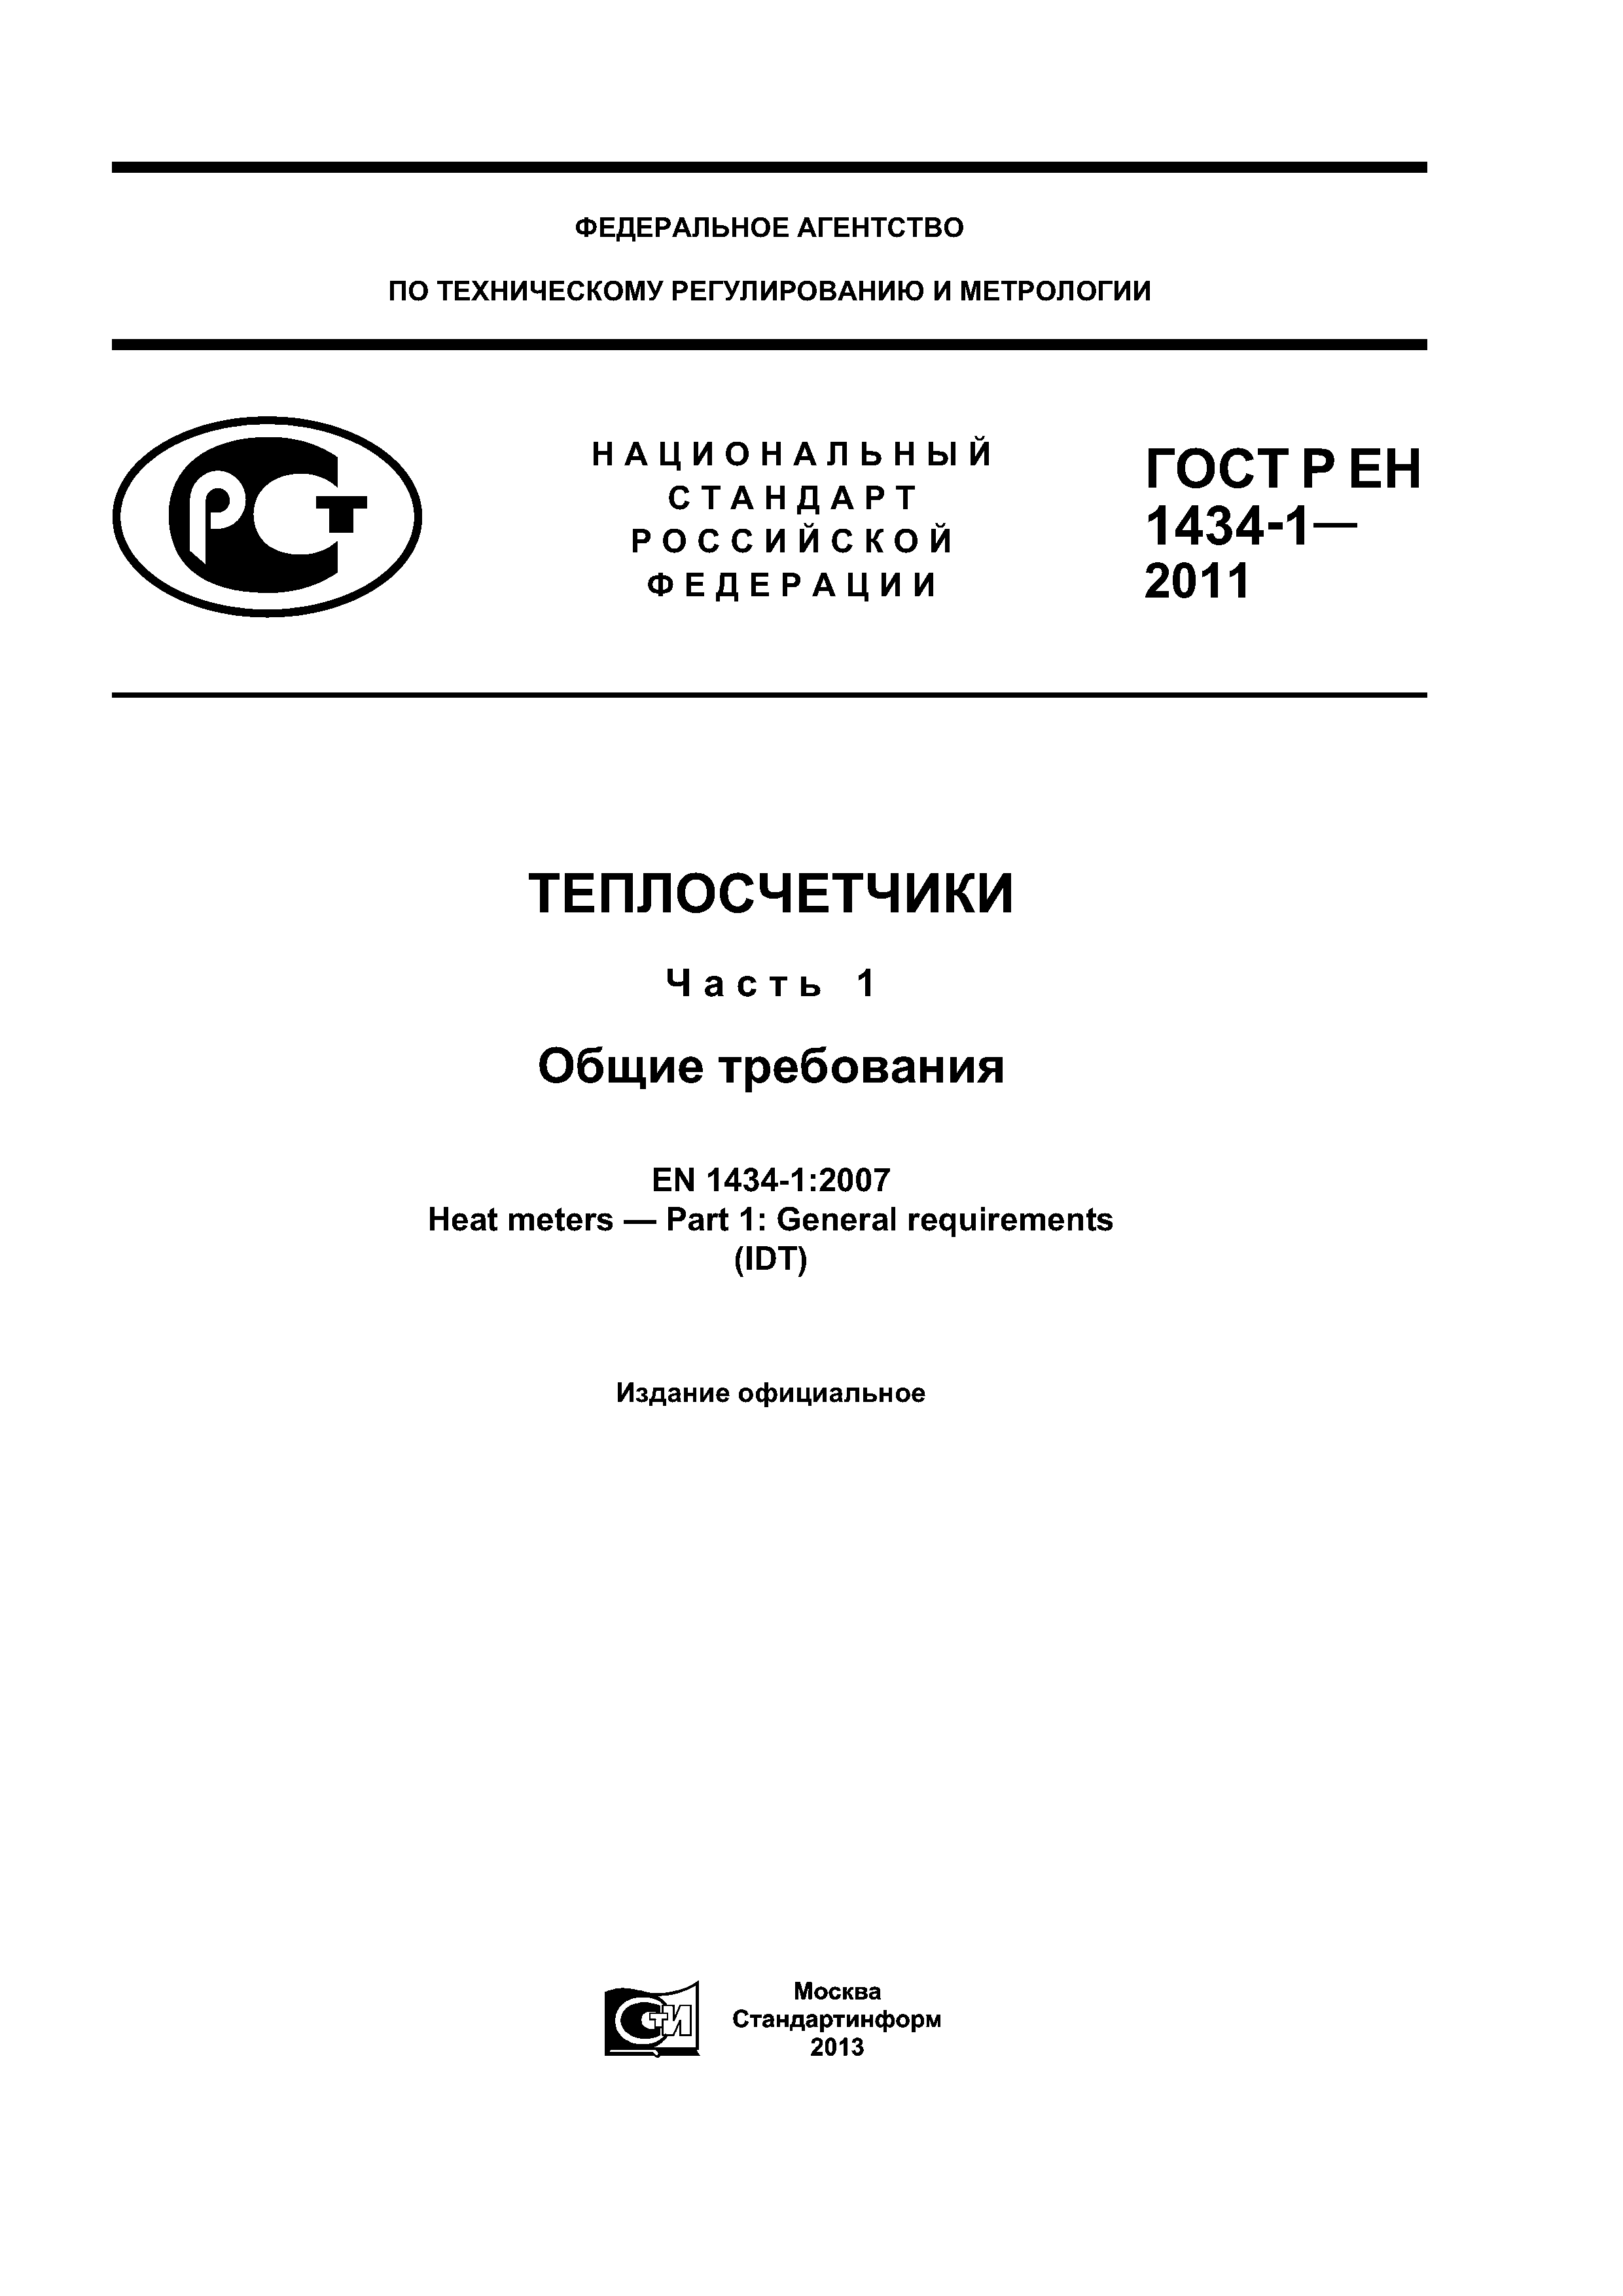 ГОСТ Р ЕН 1434-1-2011